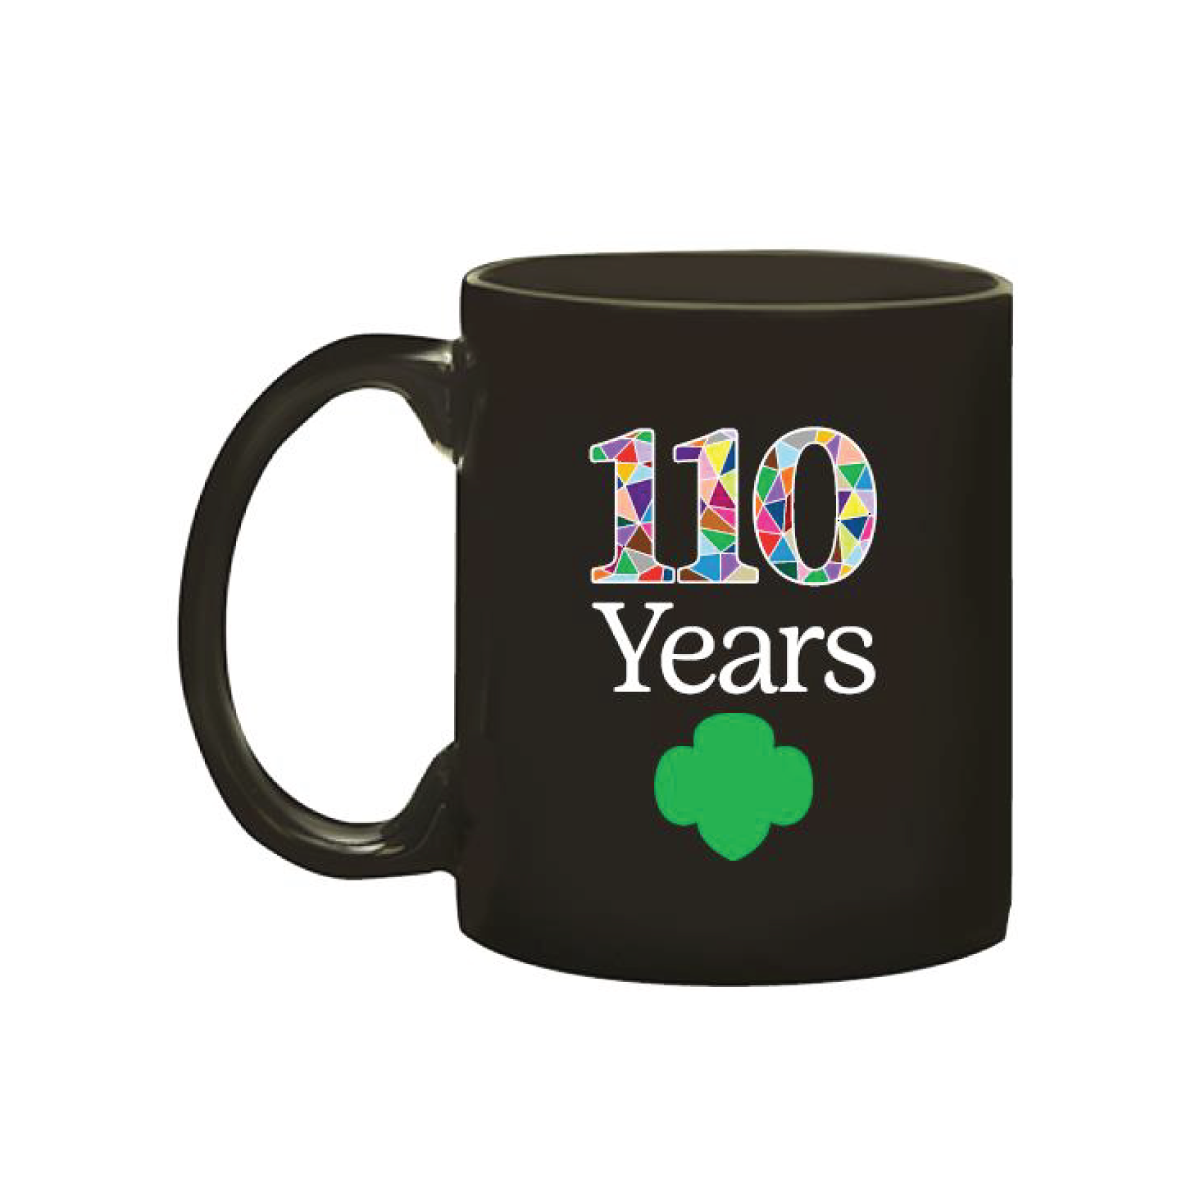 110 Years Mug